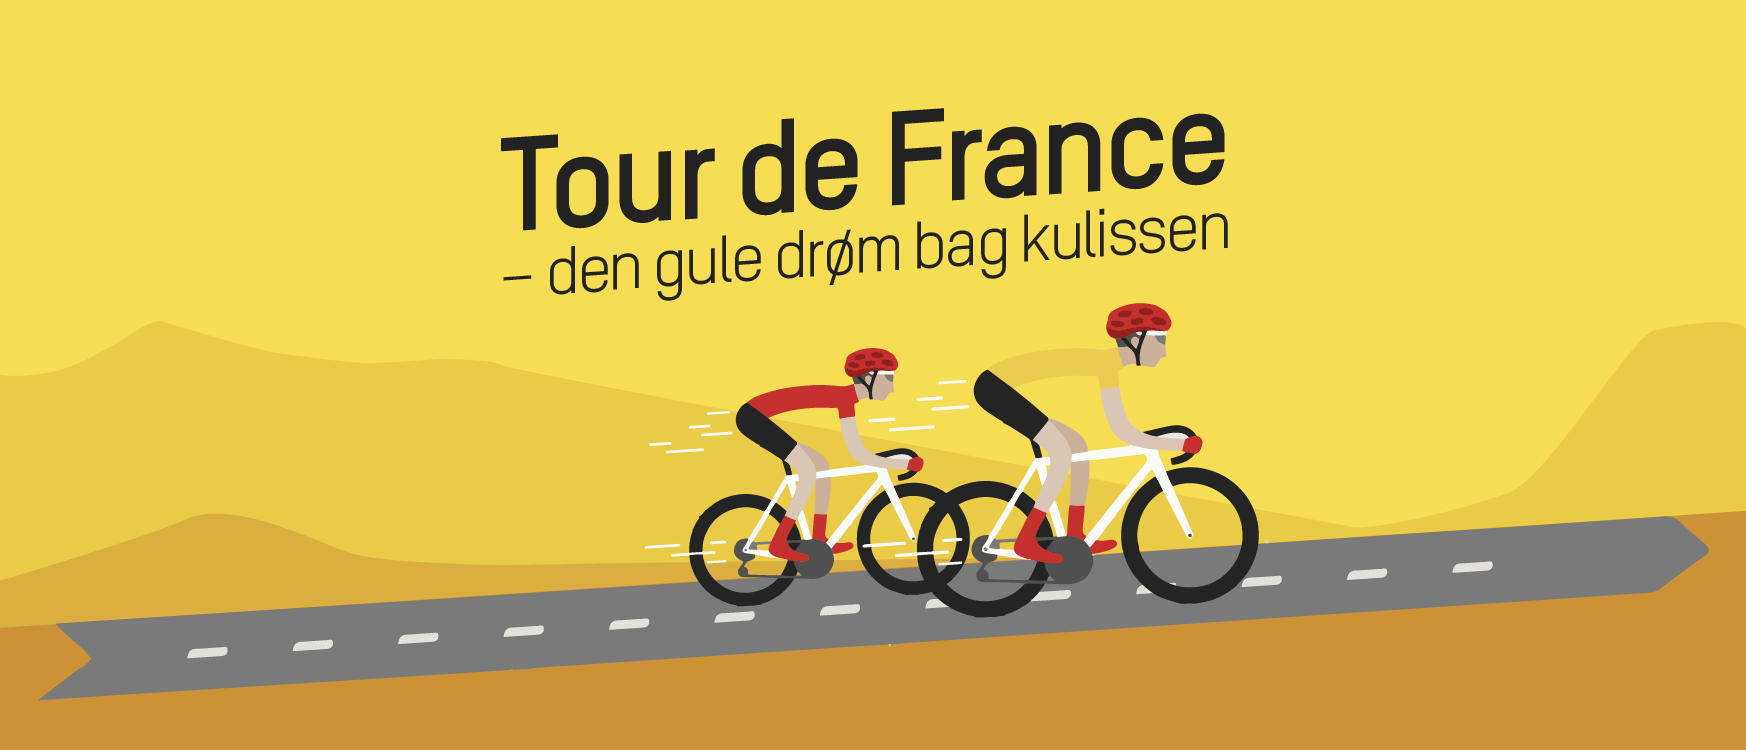 Tour de France blogindlæg om foredrag